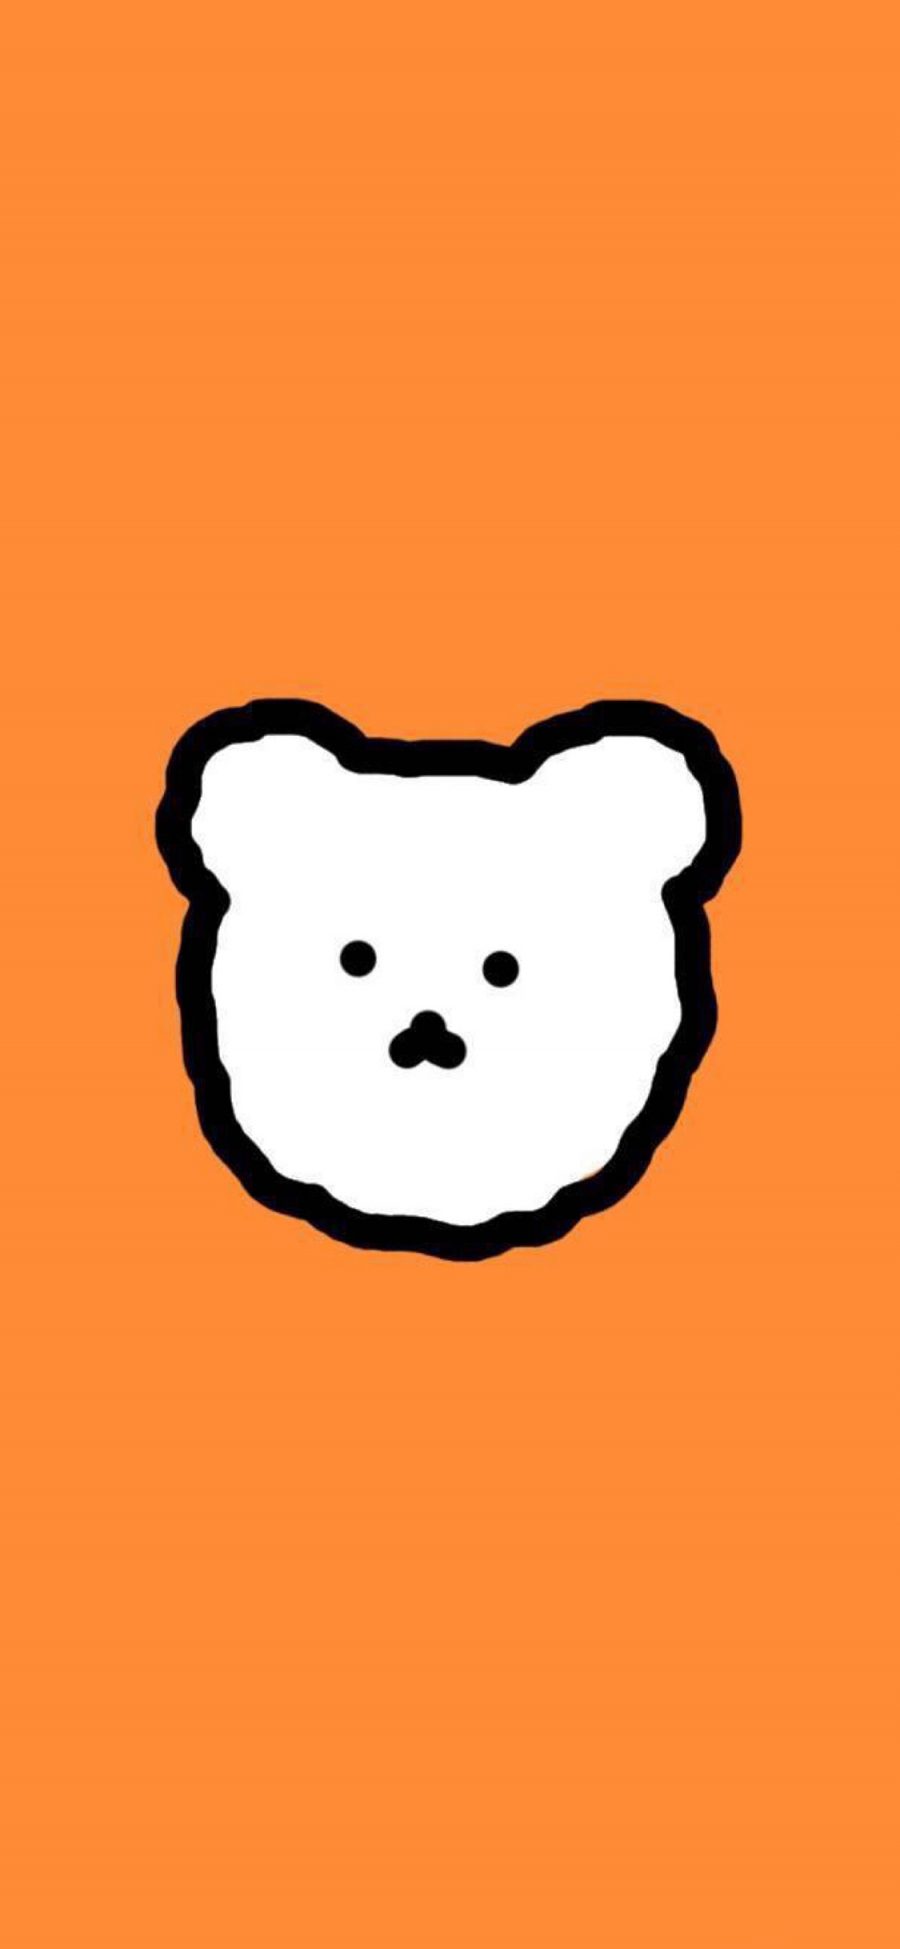 [2436×1125]橙色背景 卡通  小熊 可爱 苹果手机动漫壁纸图片